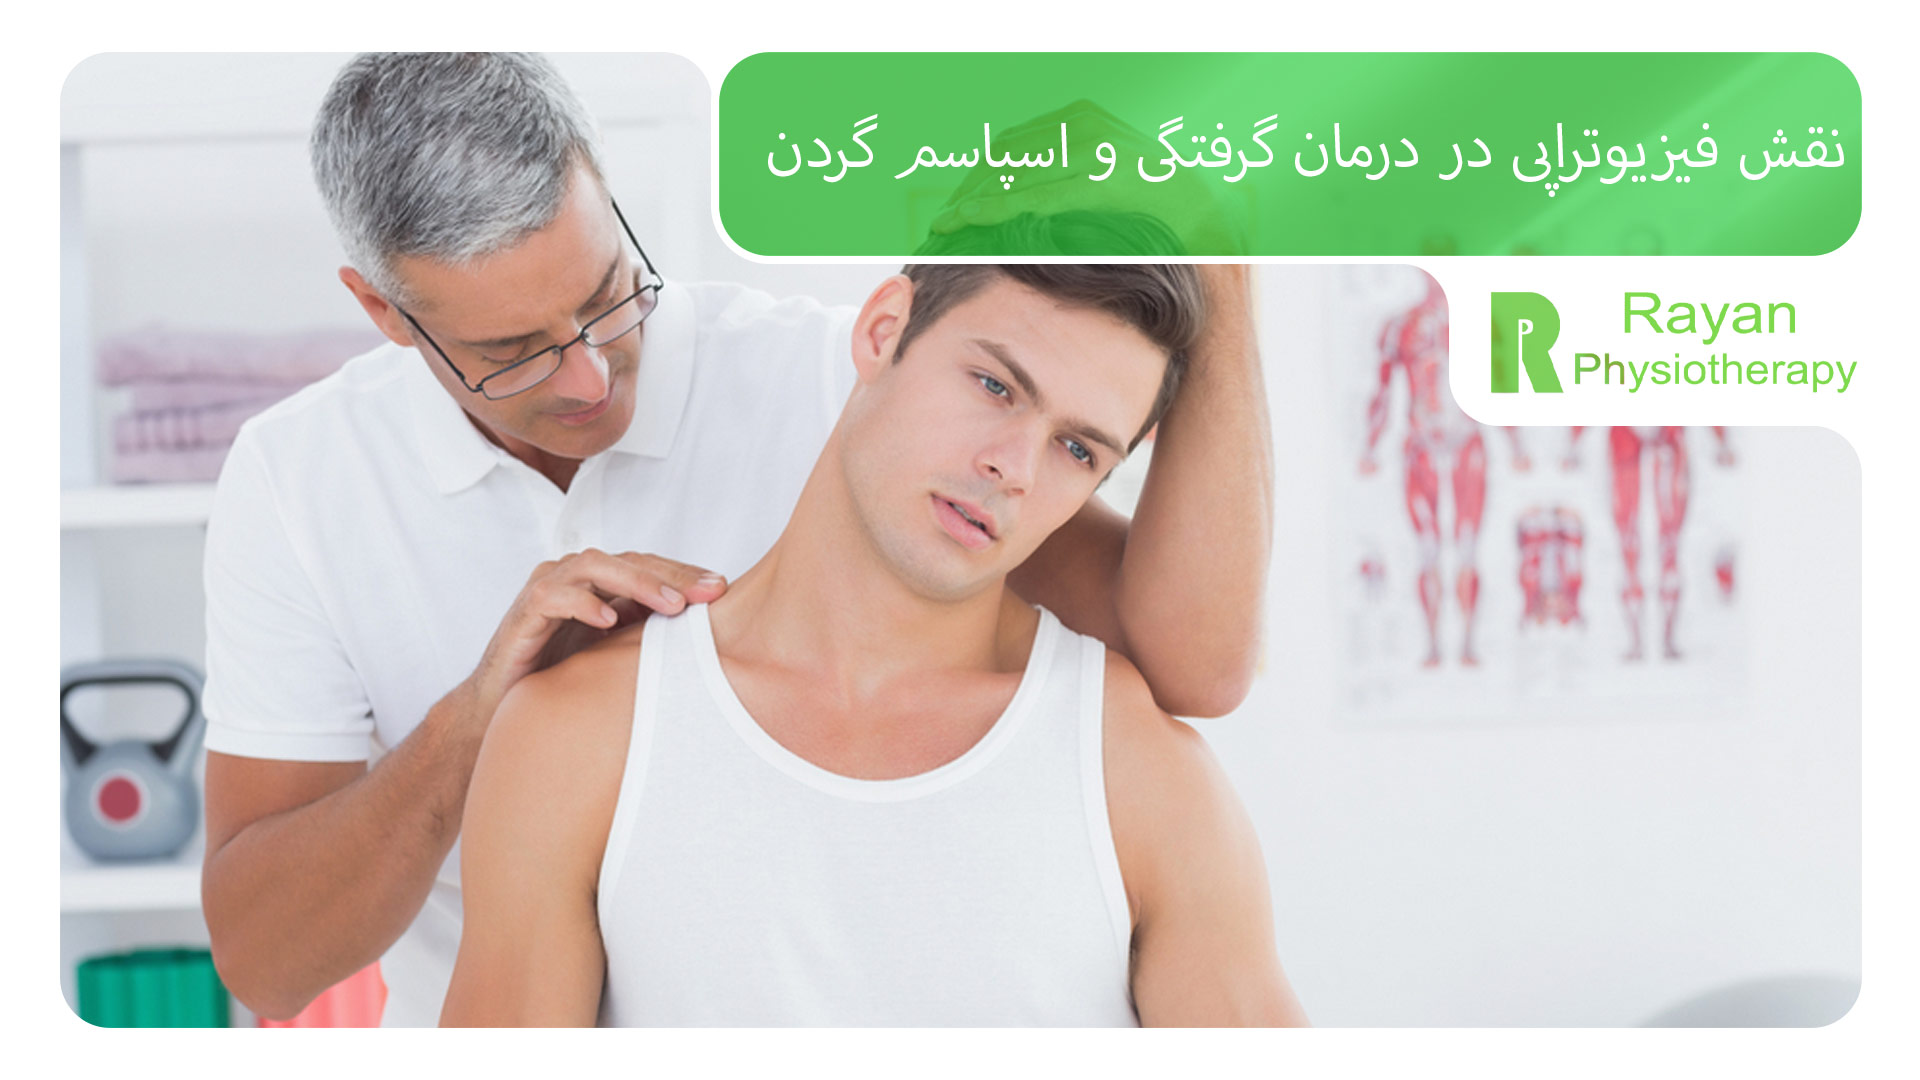 نقش فیزیوتراپی در درمان گرفتگی و اسپاسم گردن